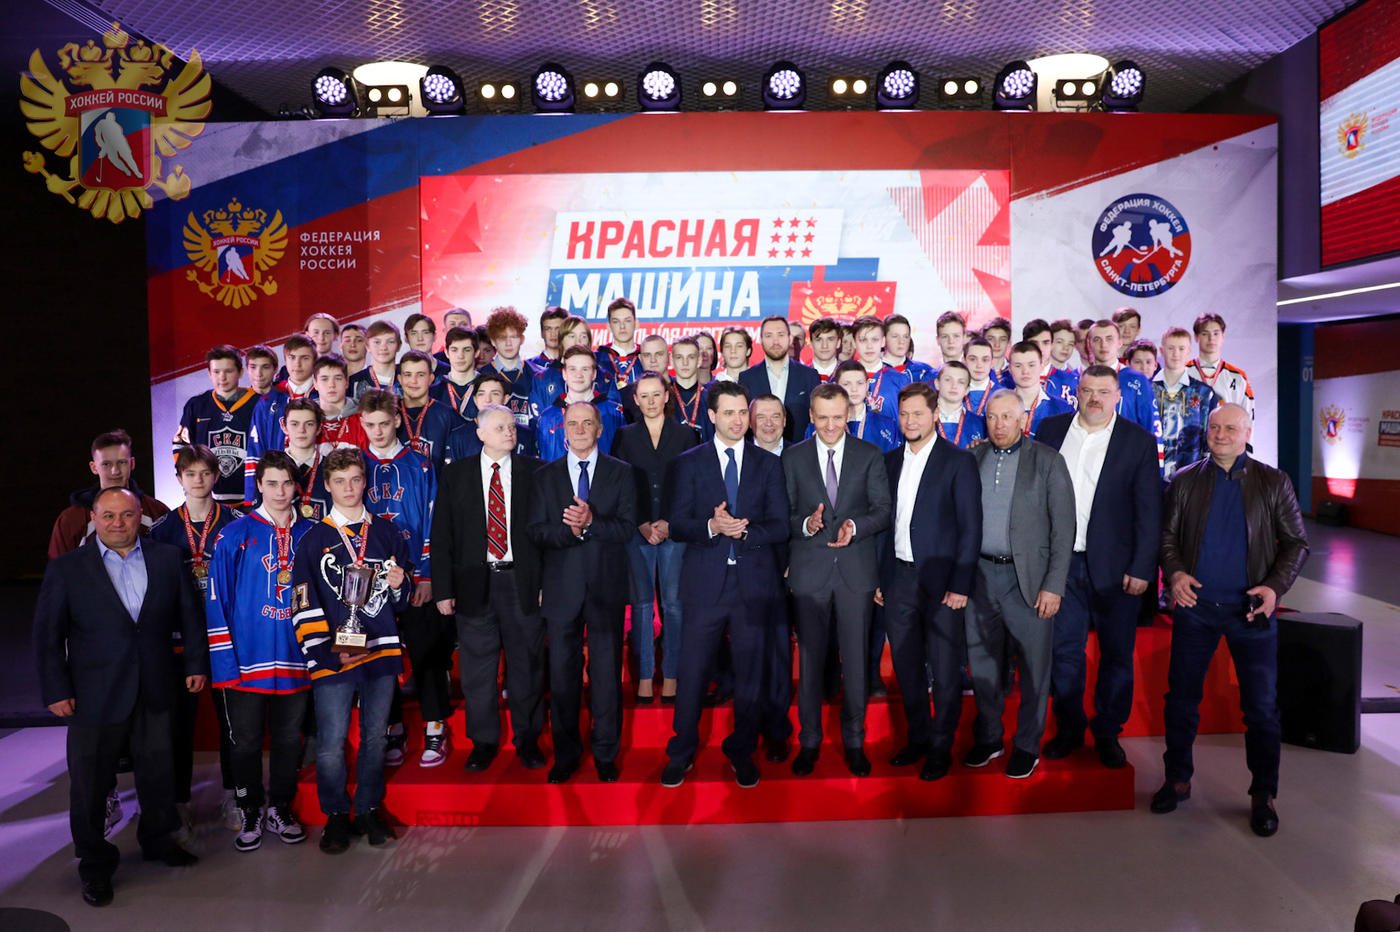 Петербургские юноши стали чемпионами федеральных округов. Что это значит для СКА? - фото